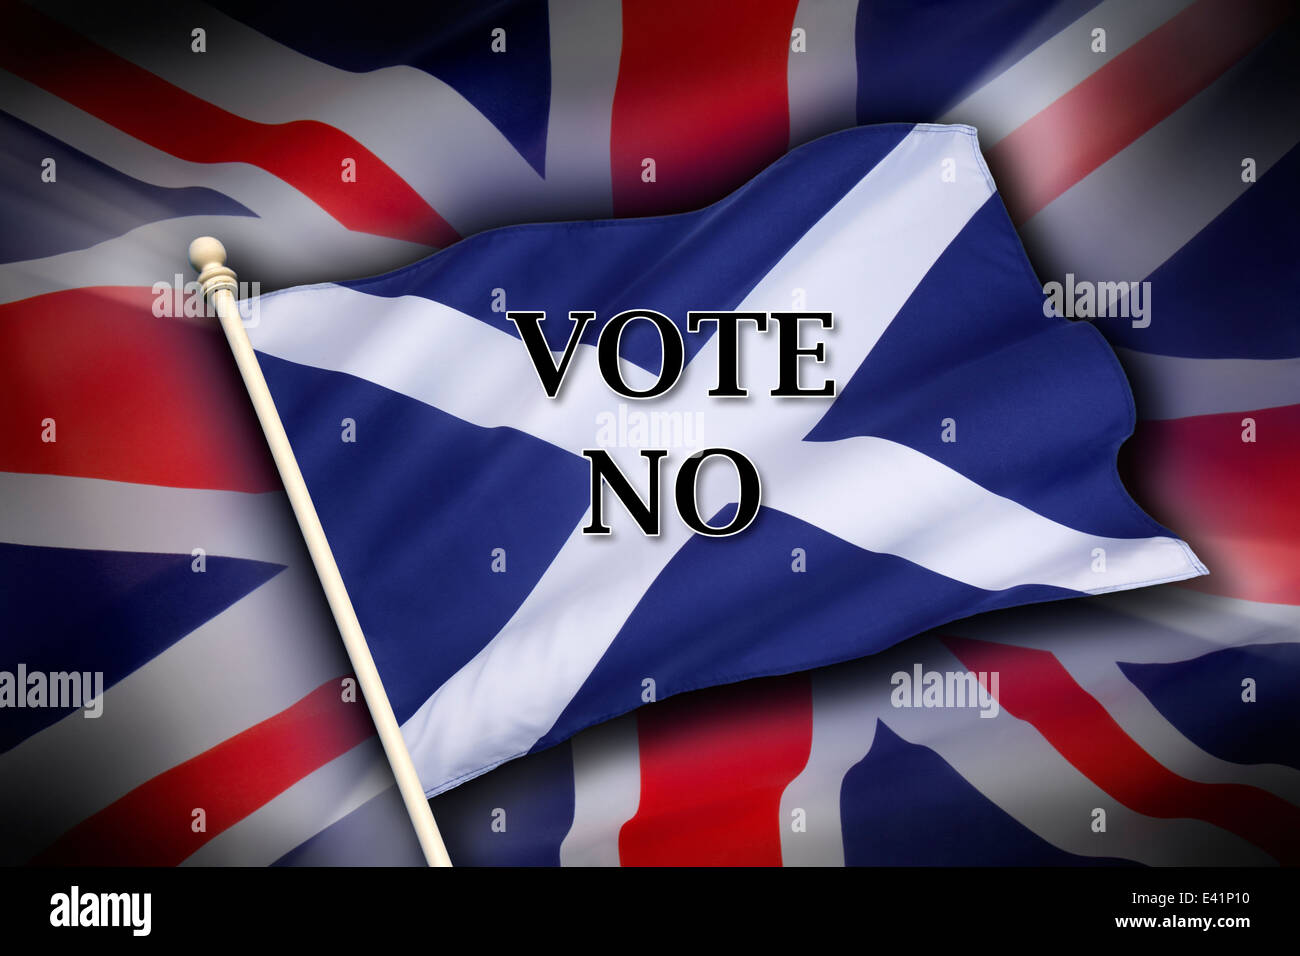 Le pavillon du Royaume-Uni (l'Union Flag) et le drapeau de l'Écosse - l'indépendance écossaise - Voter Non Banque D'Images